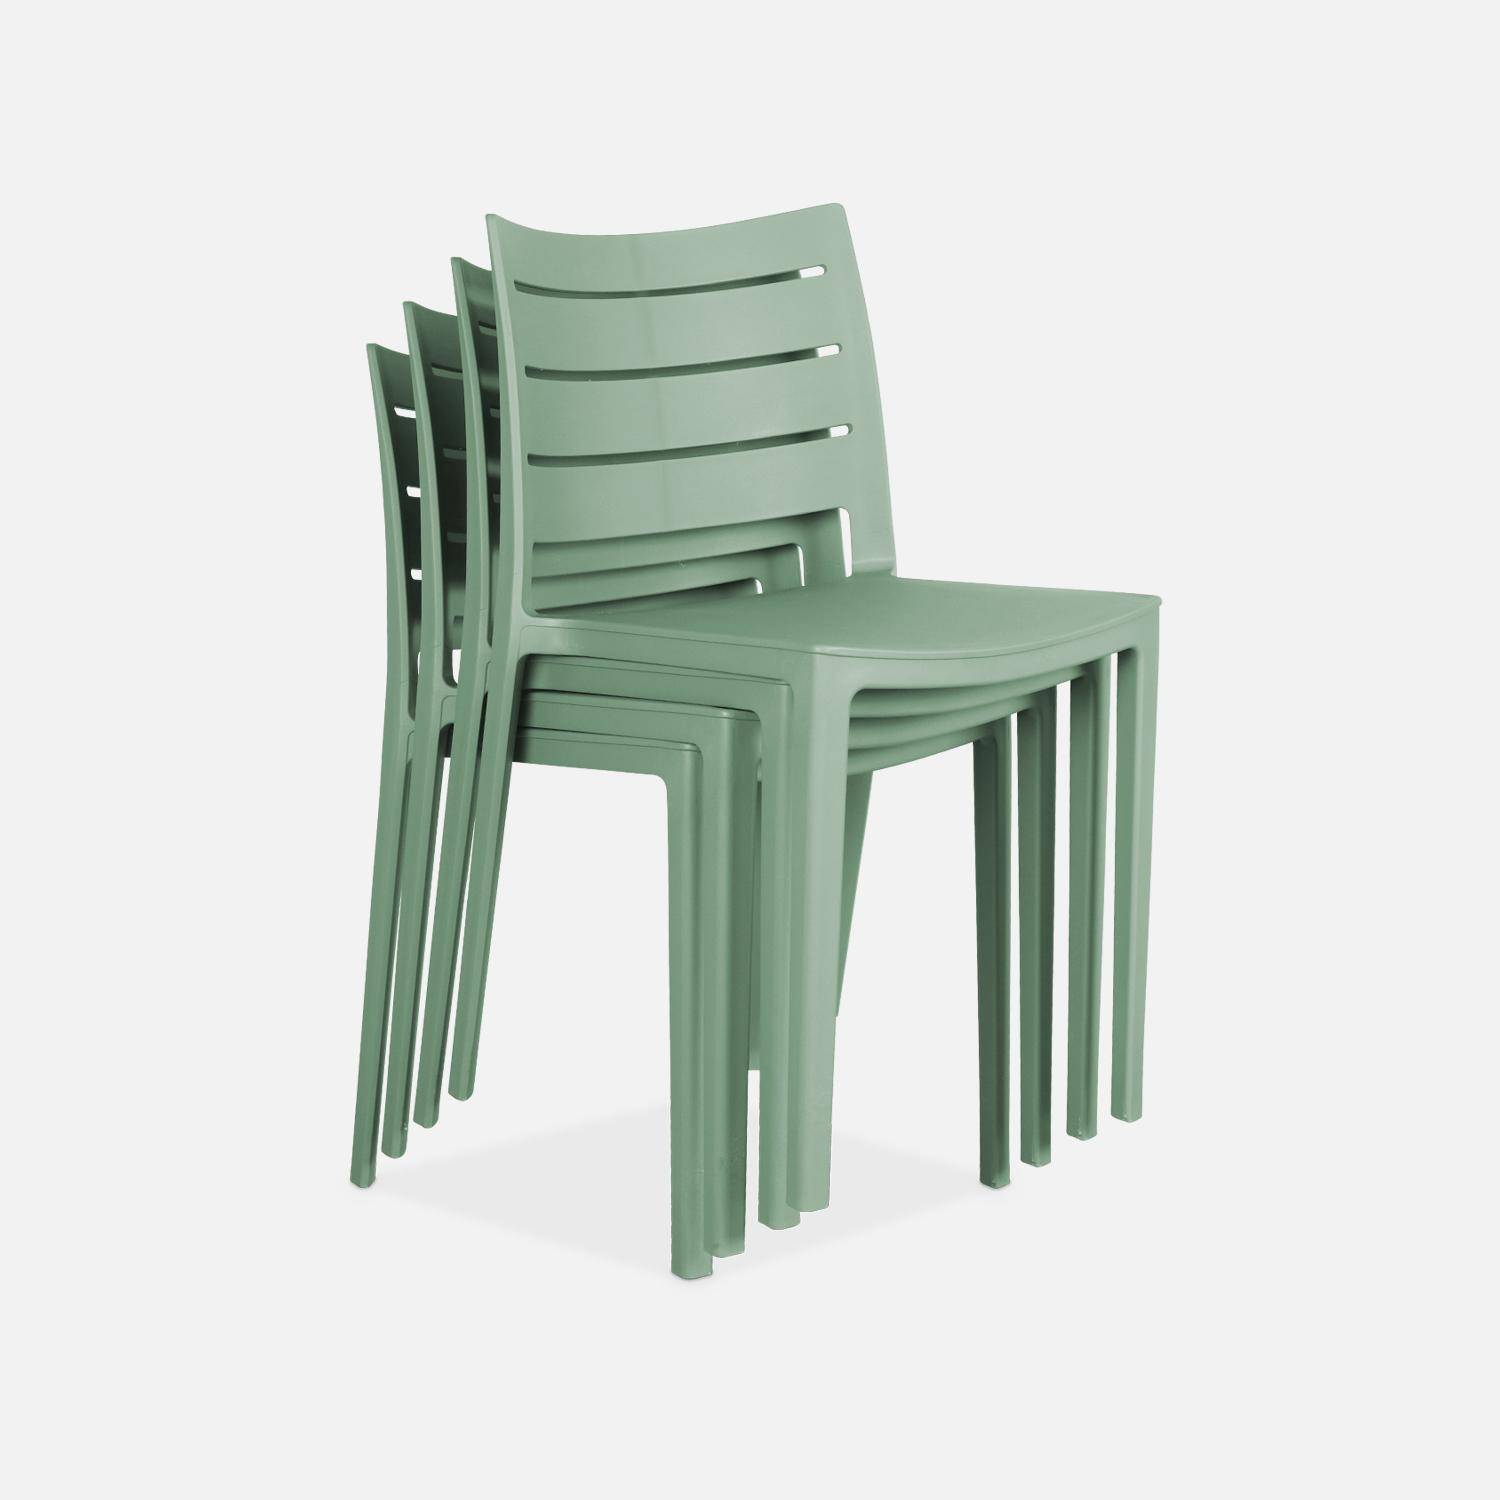 4er Set Gartenstühle aus graugrünem Kunststoff, stapelbar, bereits zusammengebaut - Jeanne,sweeek,Photo3